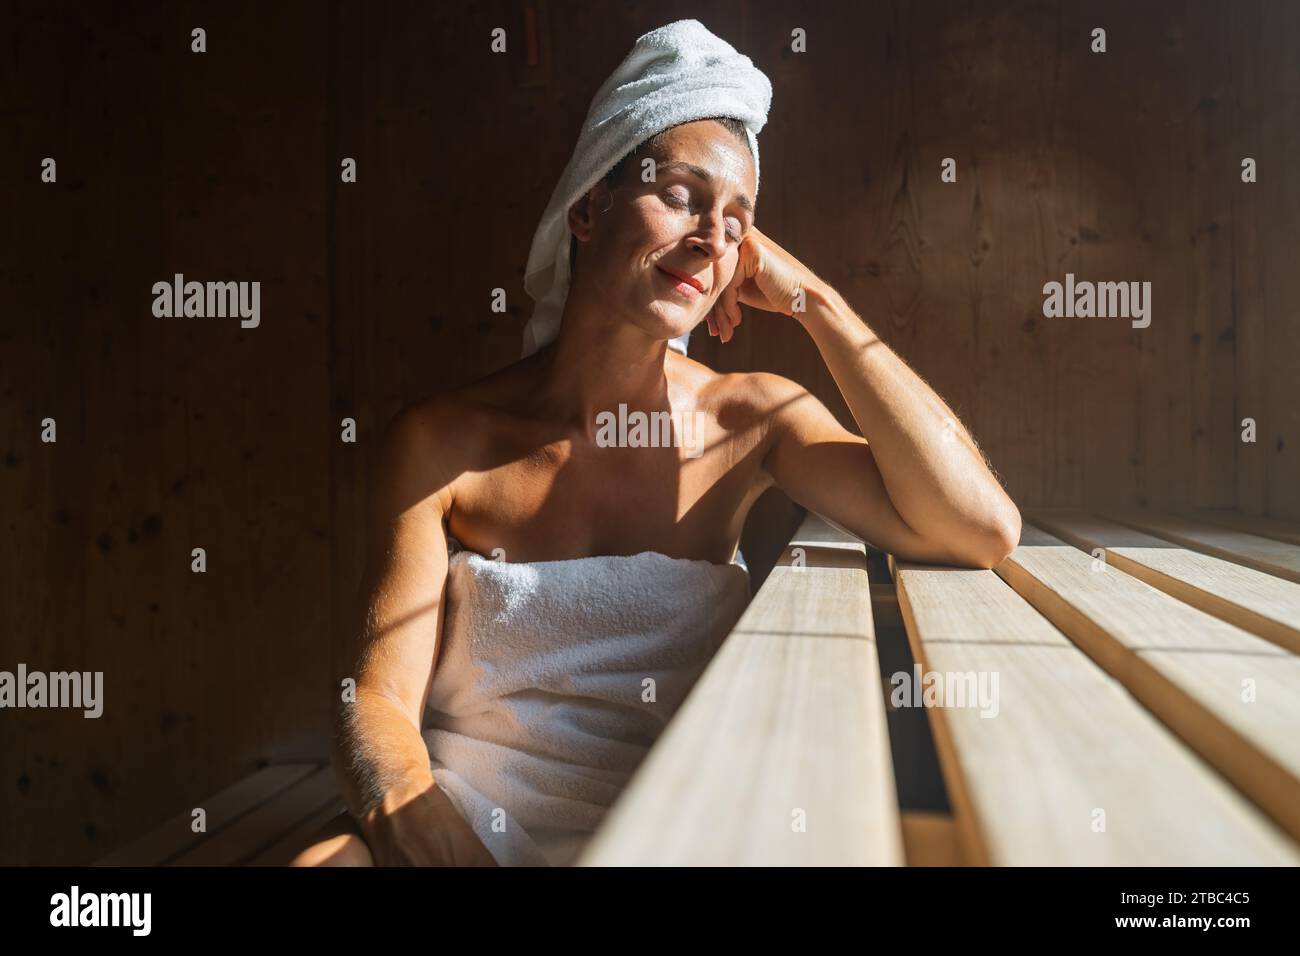 Frau in einer finnischen Sauna, die sich zurücklehnt, die Augen geschlossen, mit einem Handtuch um den Kopf gewickelt und in einem Spa-Resort sonnig beleuchtet Stockfoto